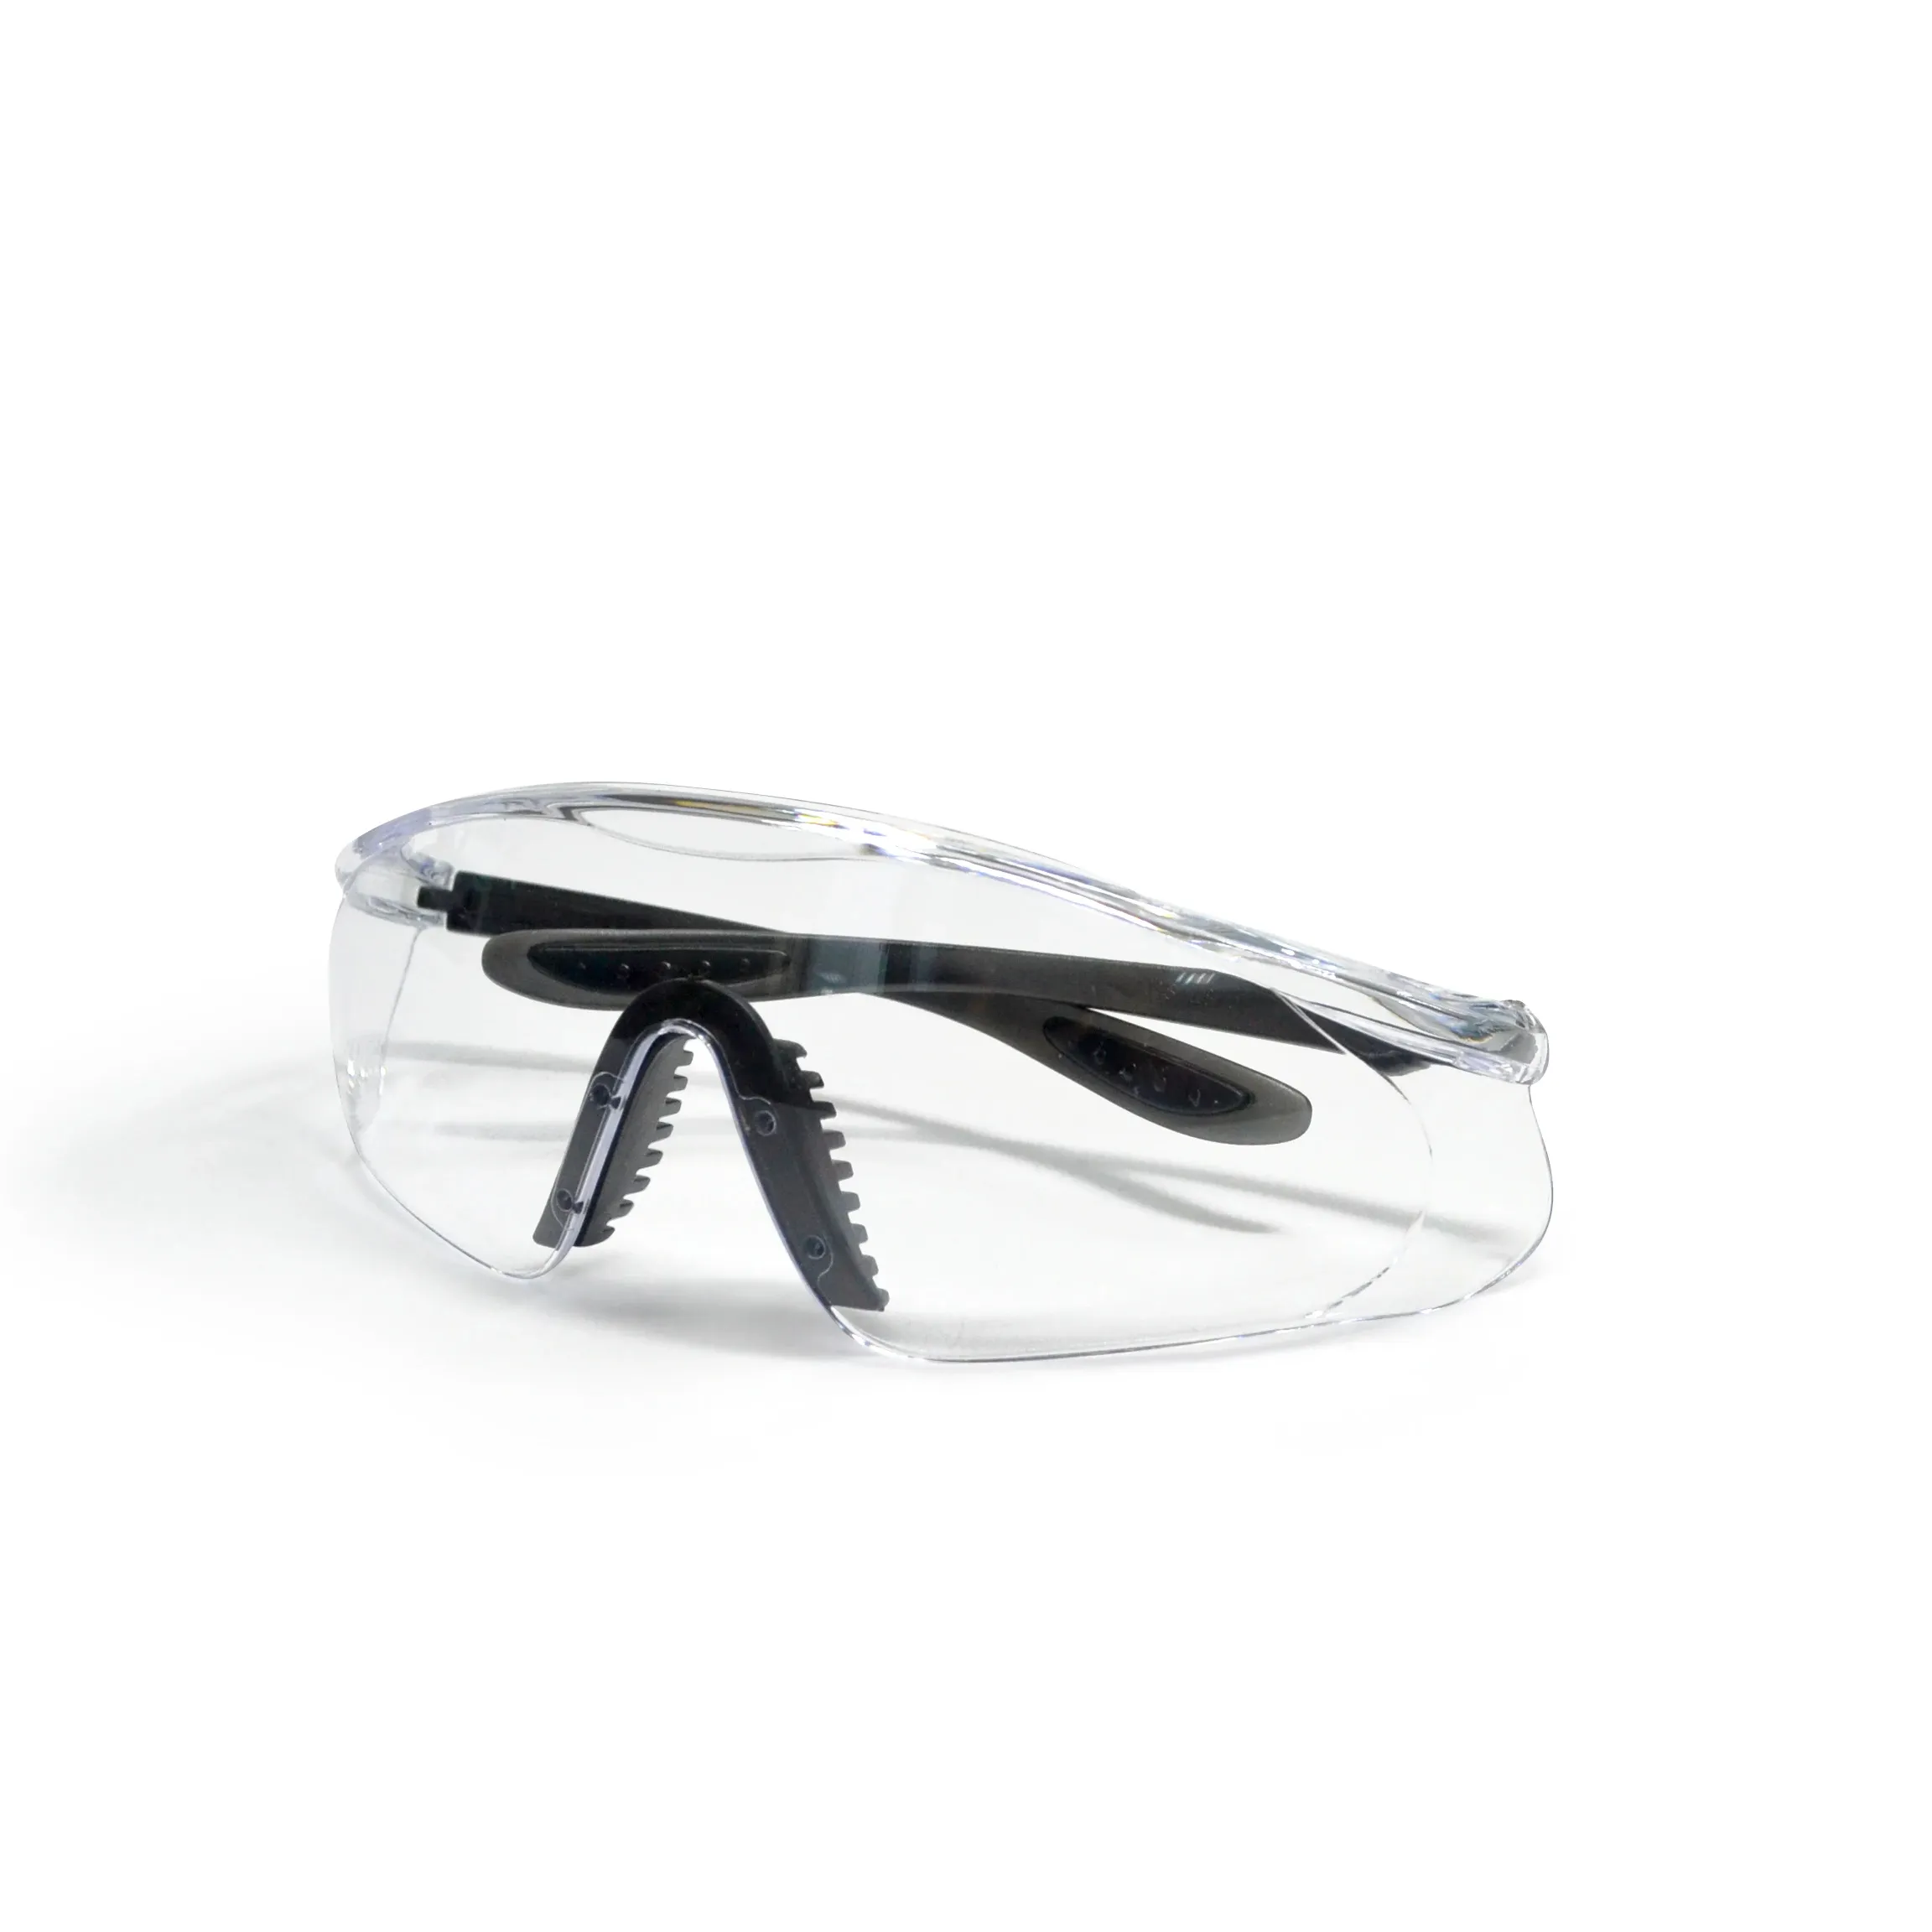 SG-71046 Pince-nez souple Anti-buée des deux côtés de la conception de la lentille Protection des yeux Article essentiel pour les travailleurs et les amateurs